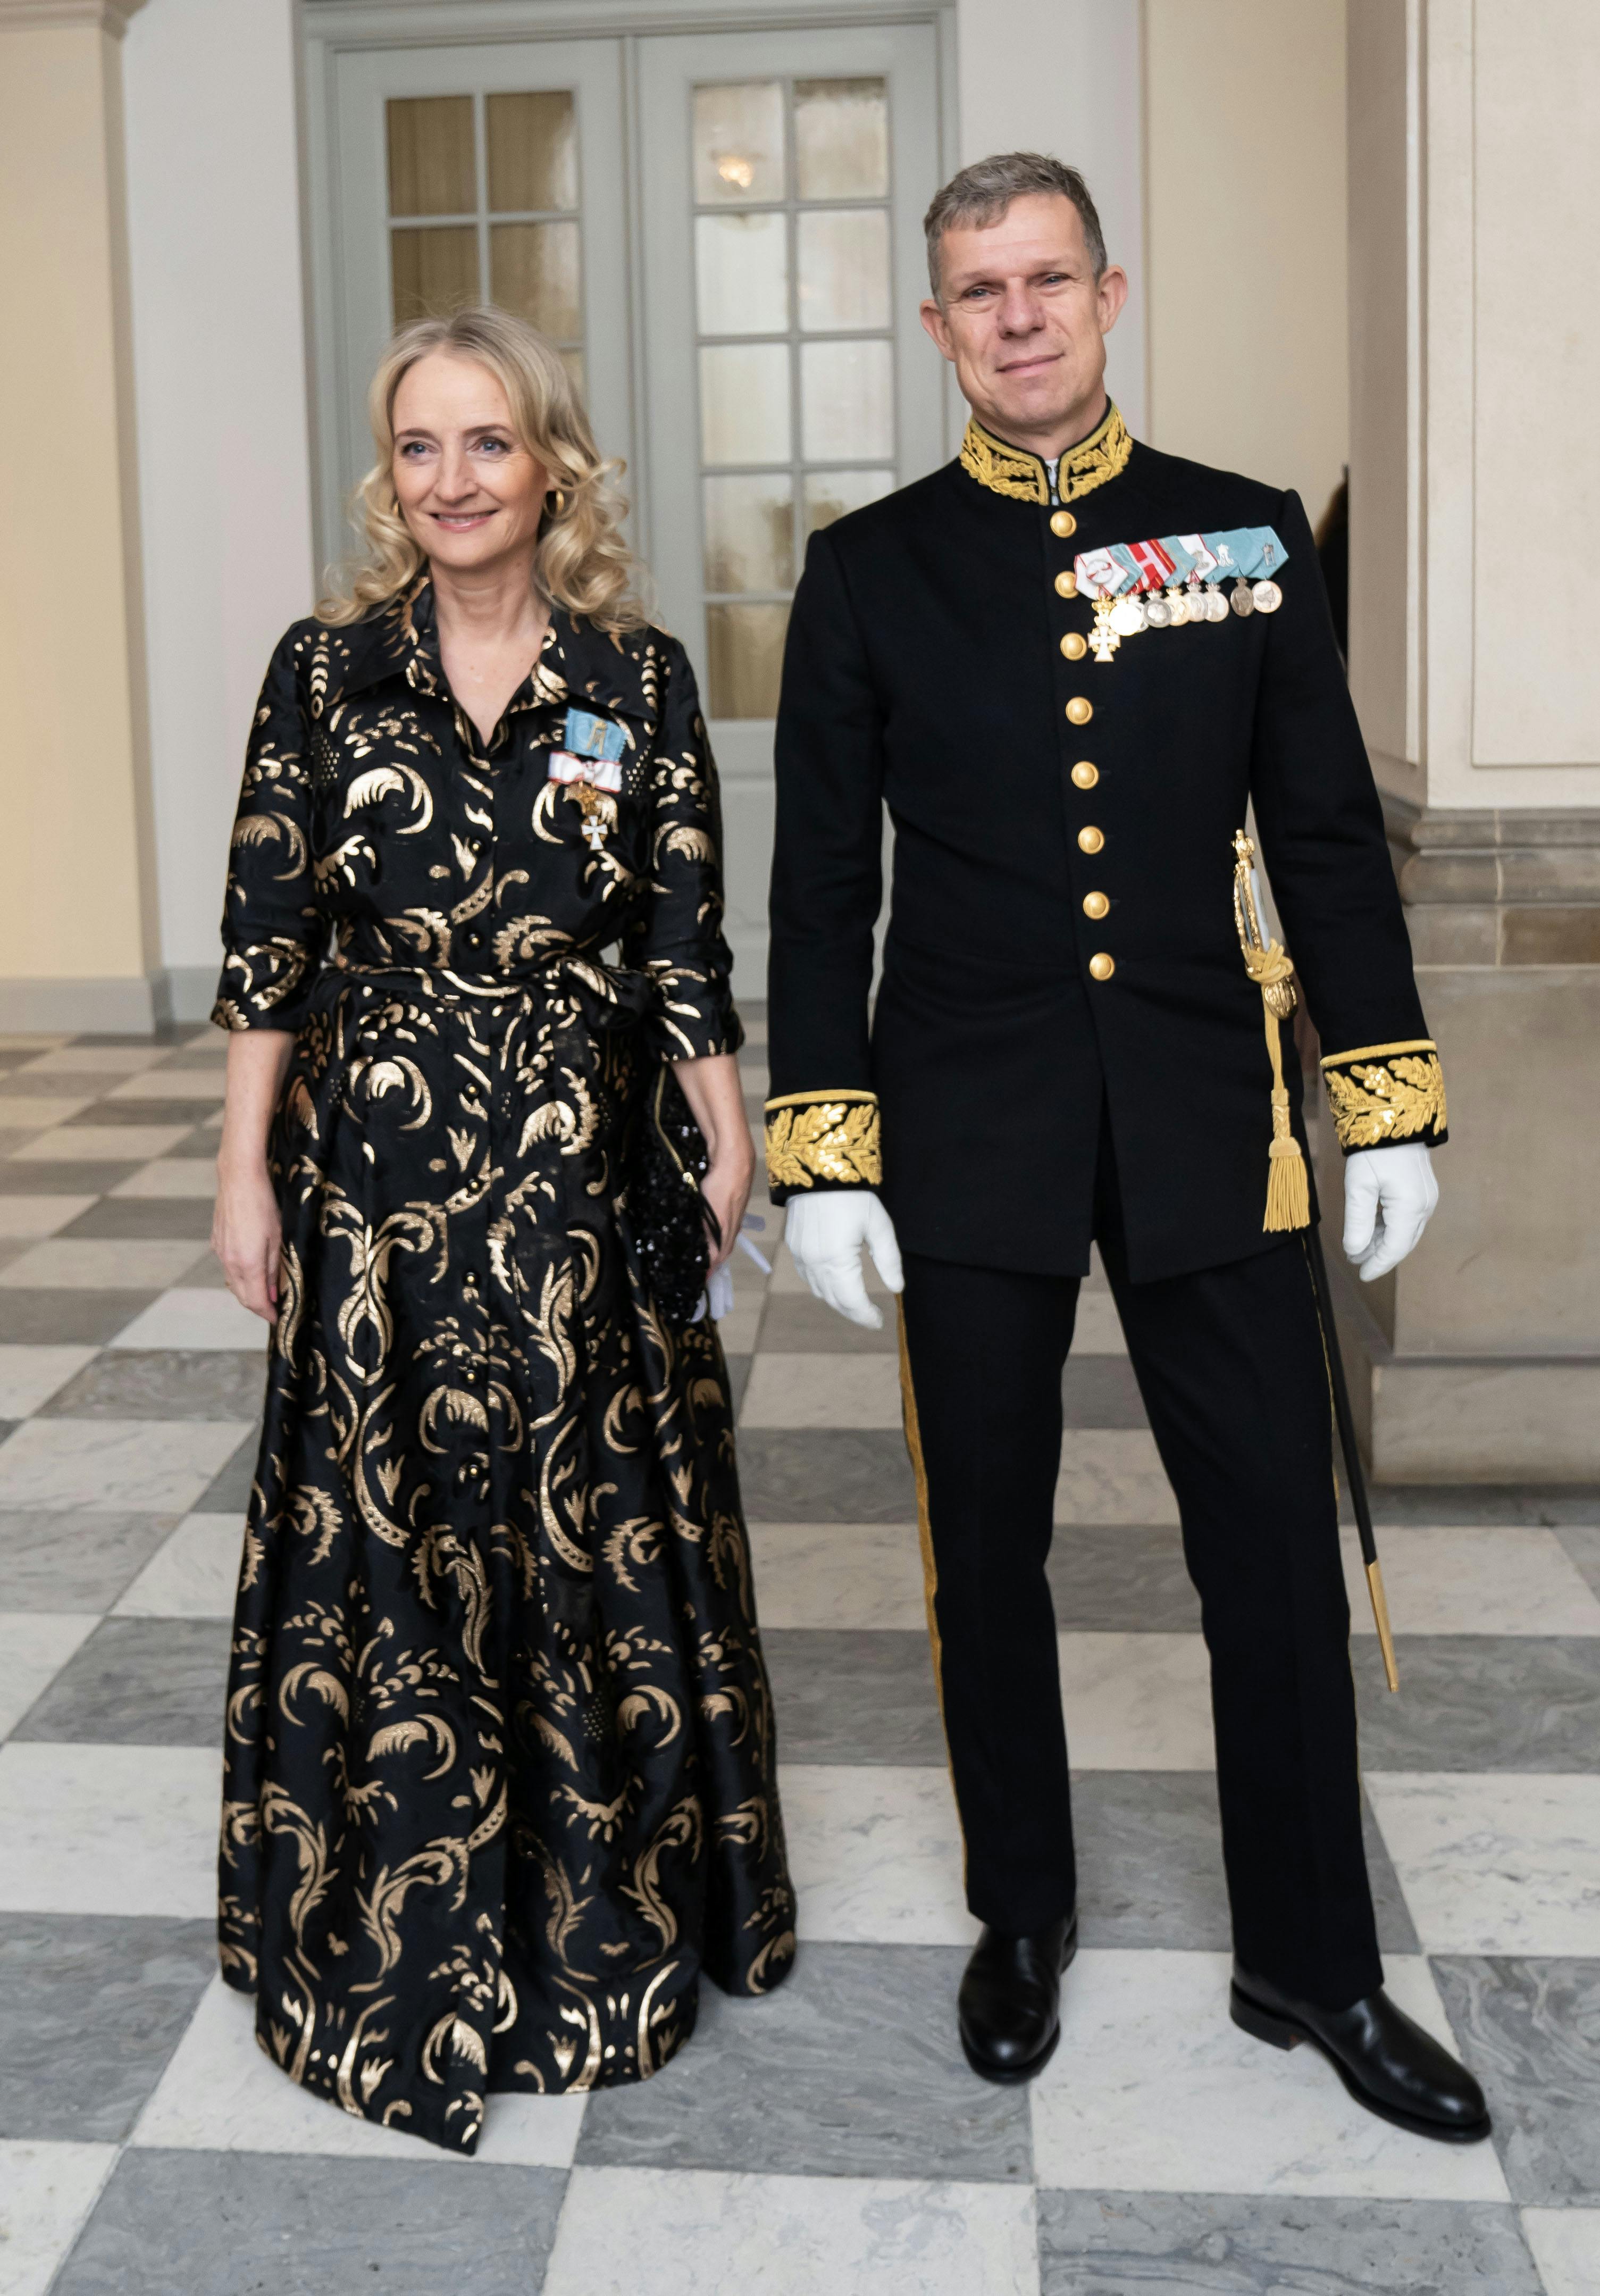 OPGAVE:Dronning Margrethe afholder nytårskur for det diplomatiske korps.Gæsterne ankommer STED: Christiansborg slot, DrabantsalenJOURNALIST: Marianne SingerFOTOGRAF: Hanne JuulDATO: 20240103